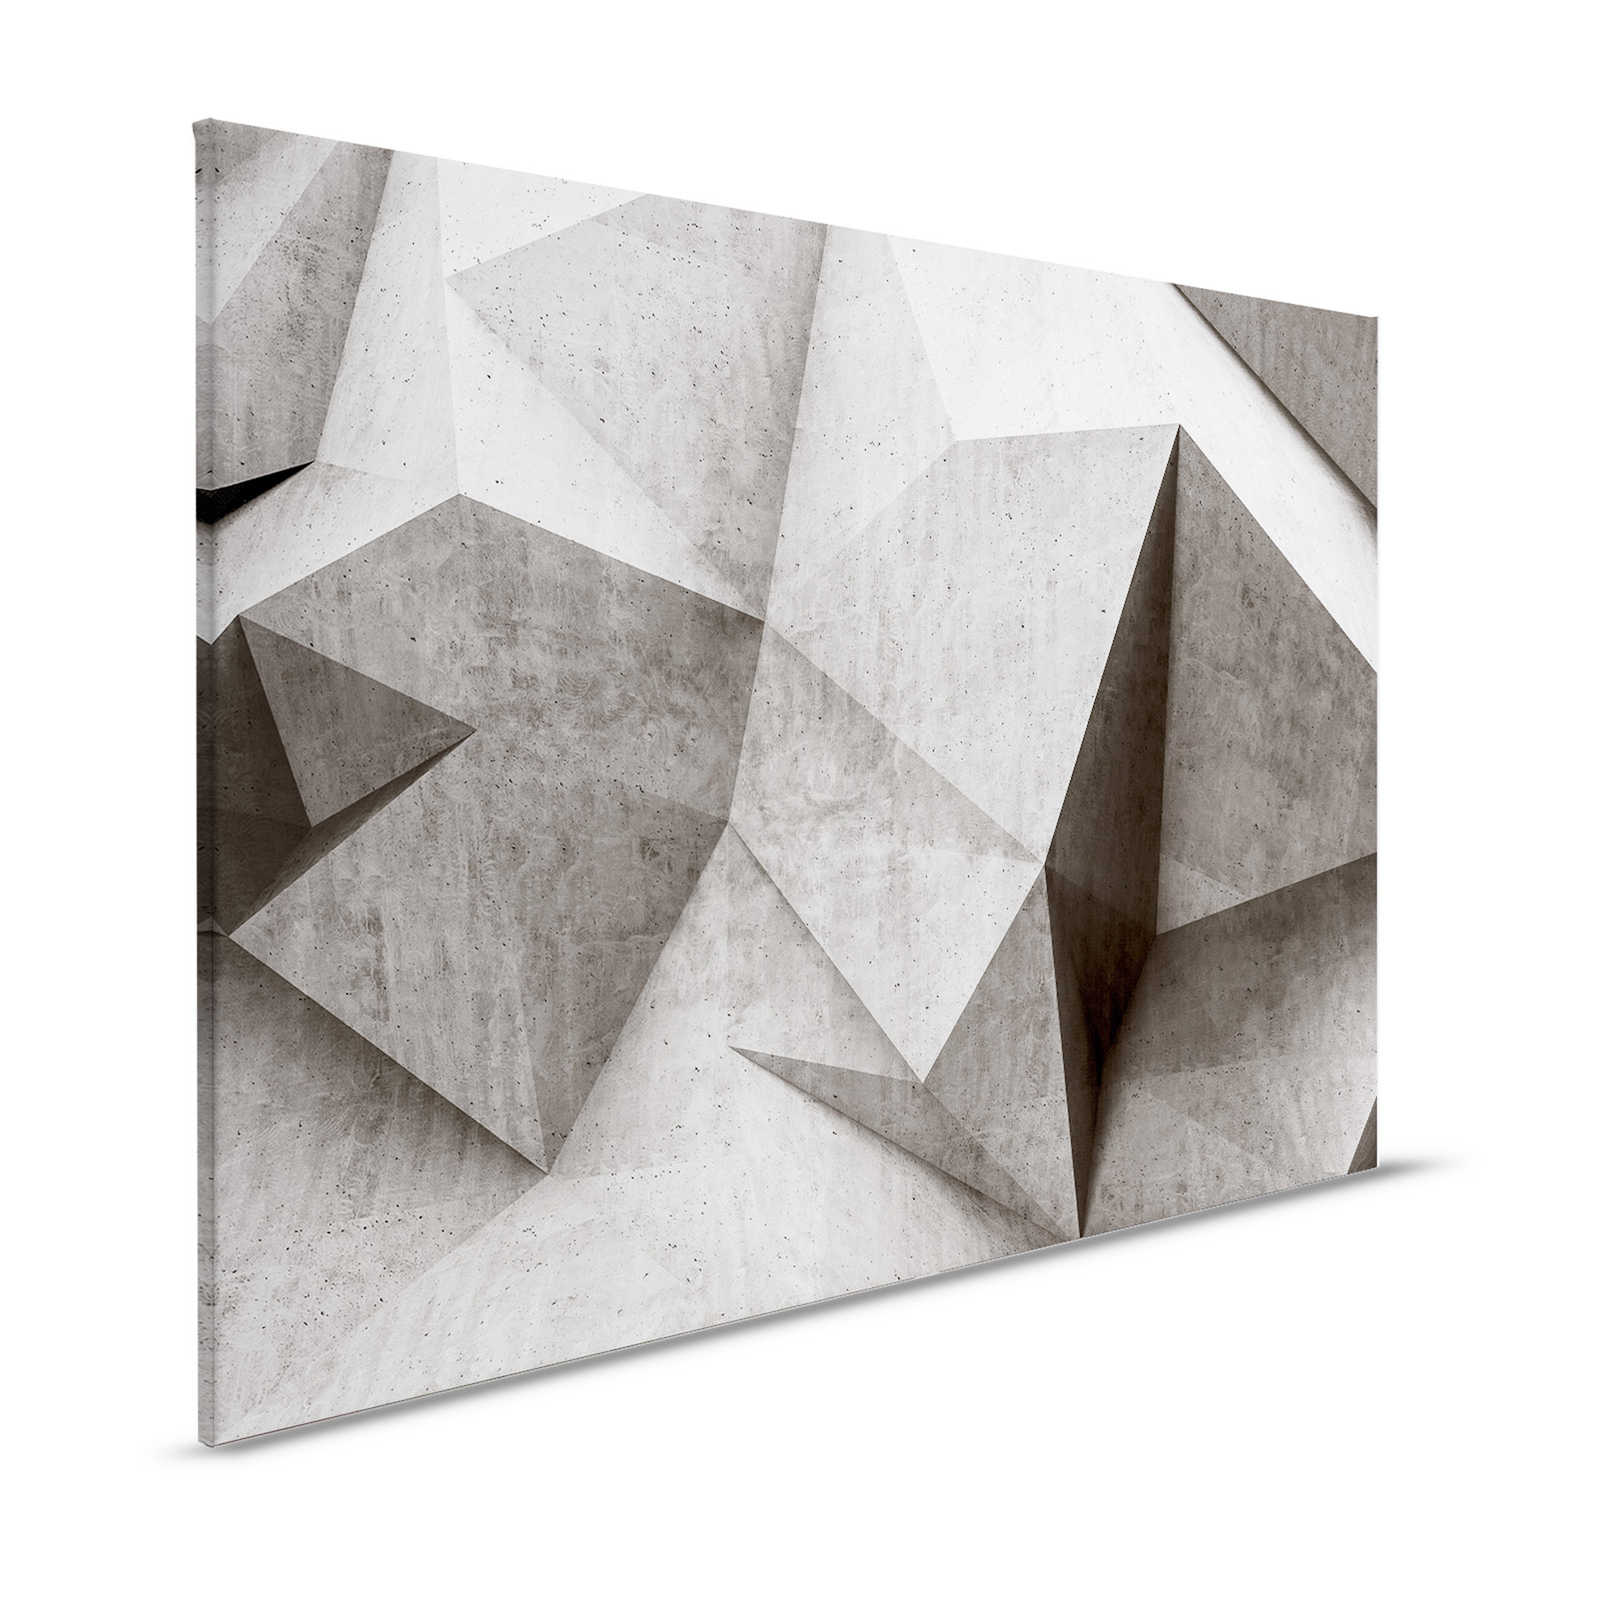 Boulder 1 - Lienzo Polígonos de hormigón 3D - 1,20 m x 0,80 m
